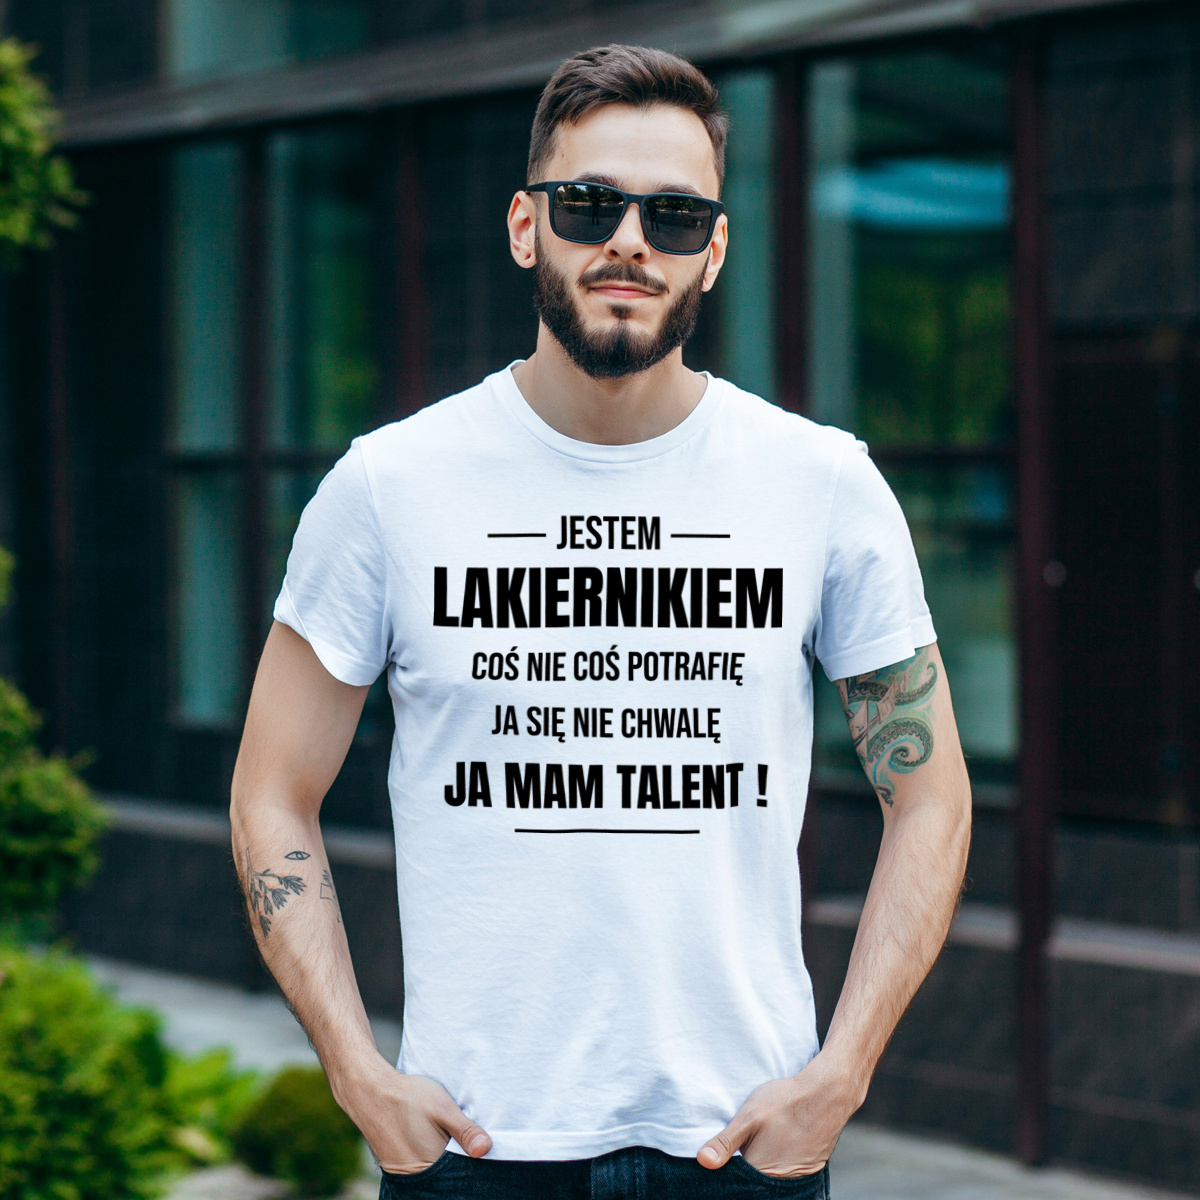 Coś Nie Coś Potrafię Mam Talent Lakiernik - Męska Koszulka Biała